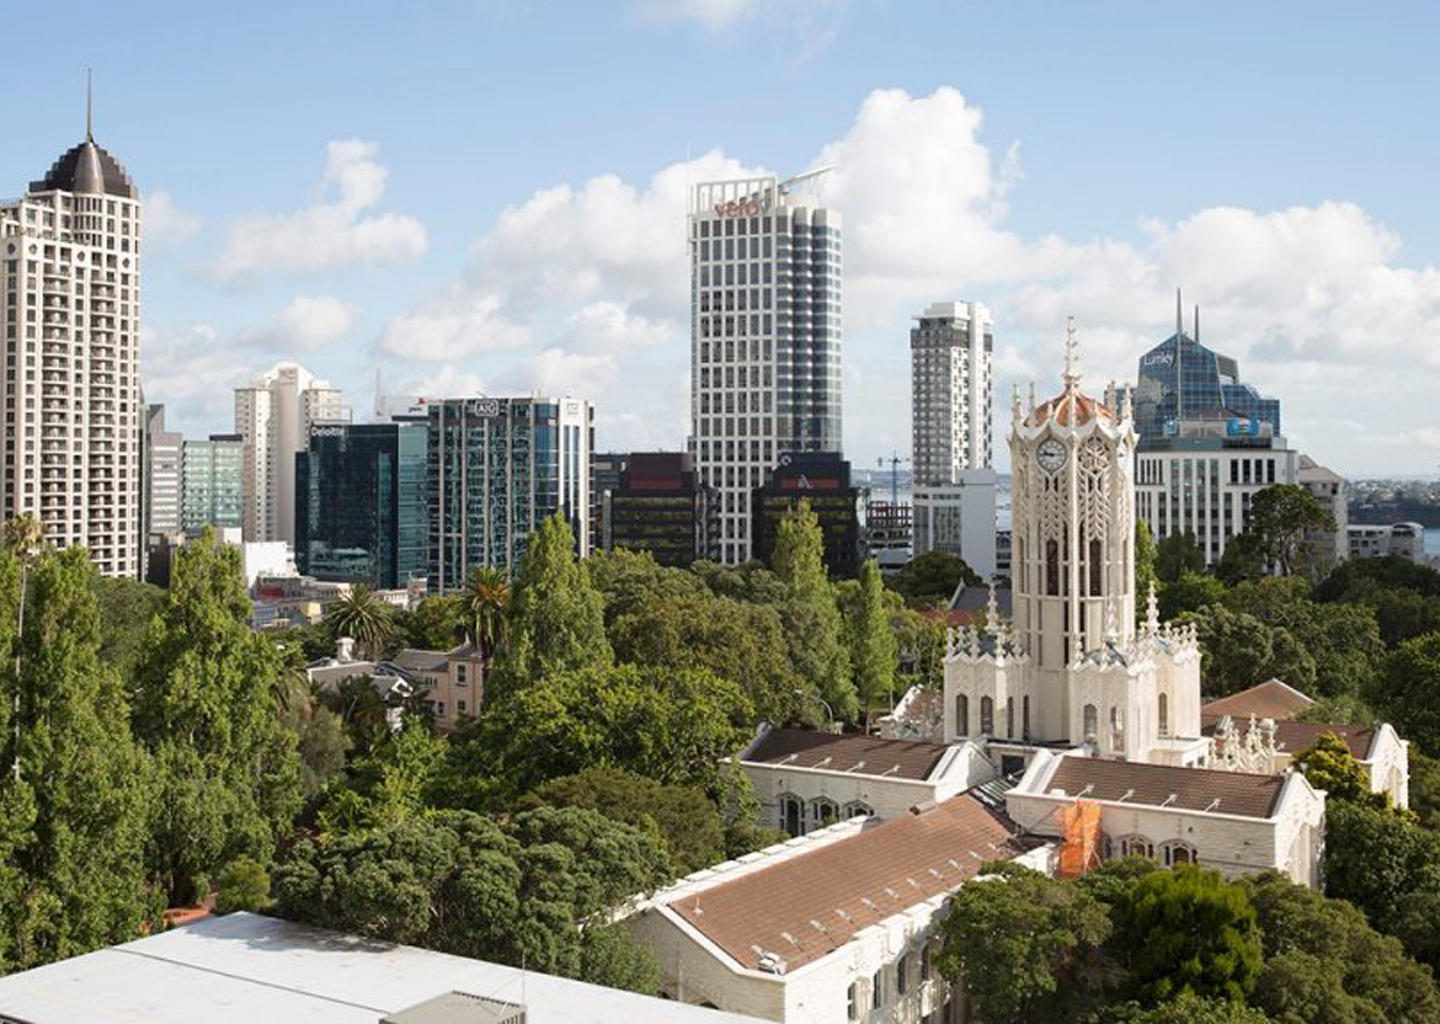 University of Auckland: Top 10 Universities in New Zealand